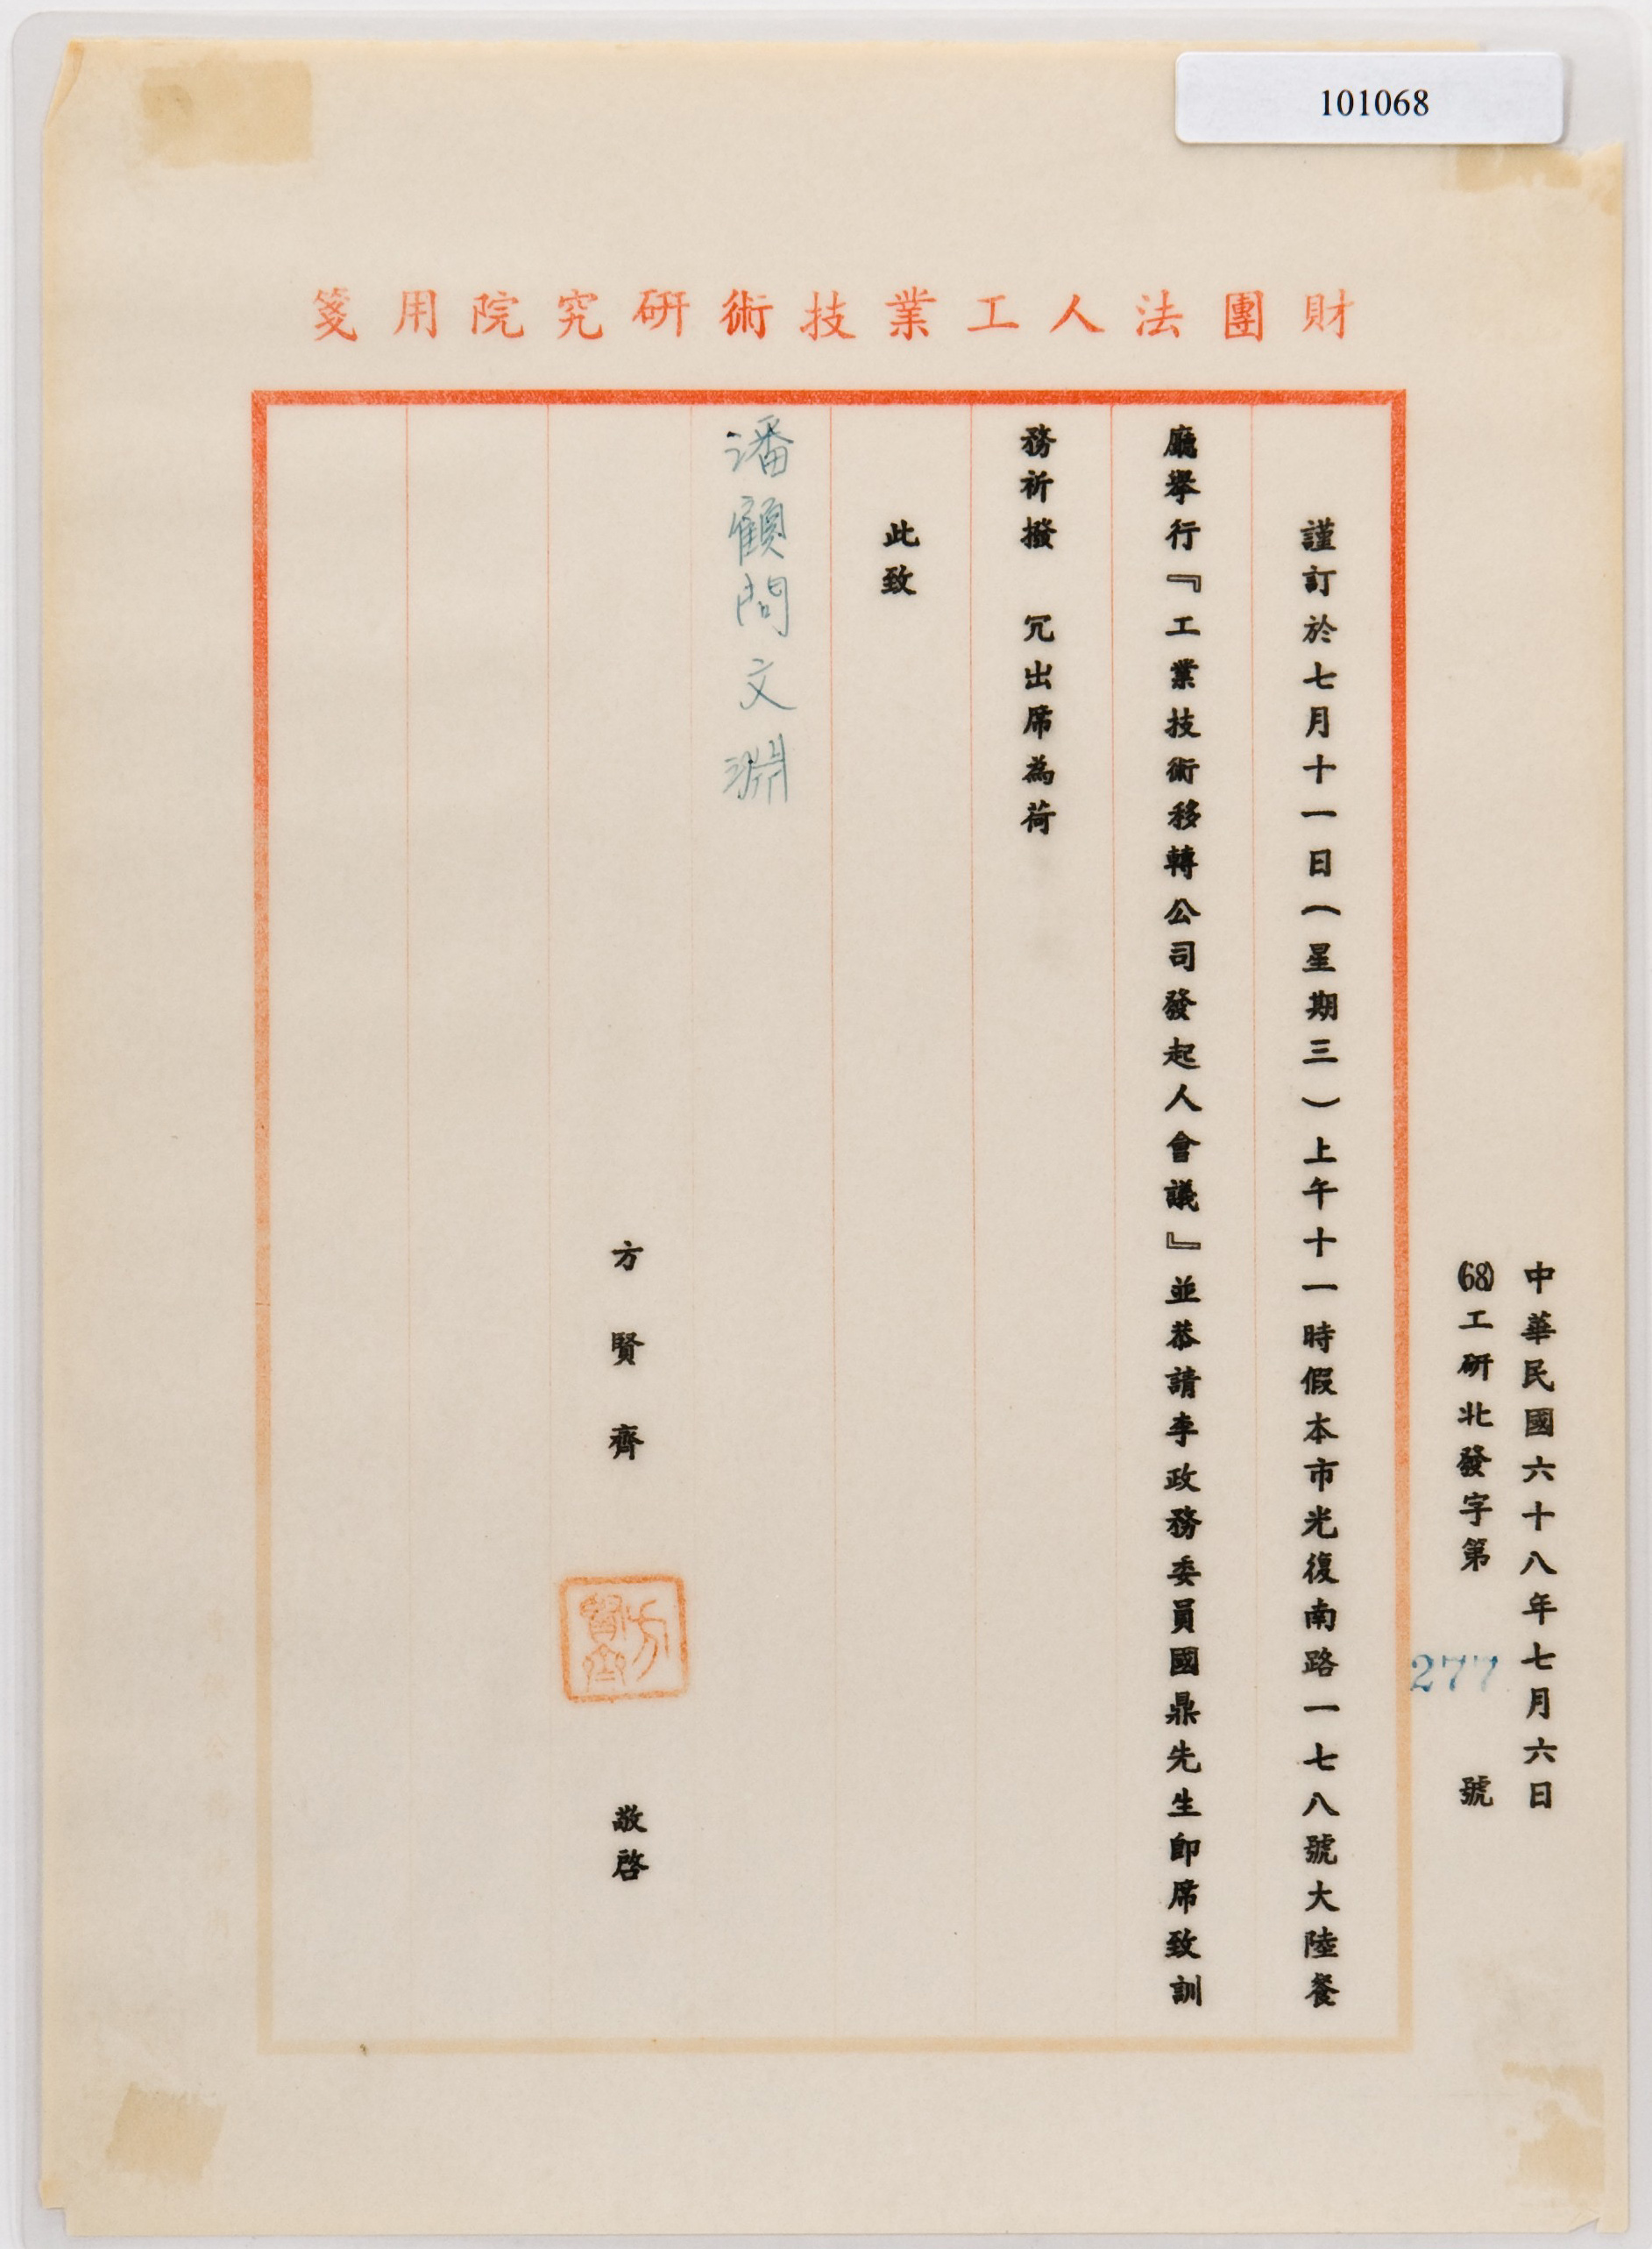 A letter from Fang Xian-Qi to Pan Wen-Yuan